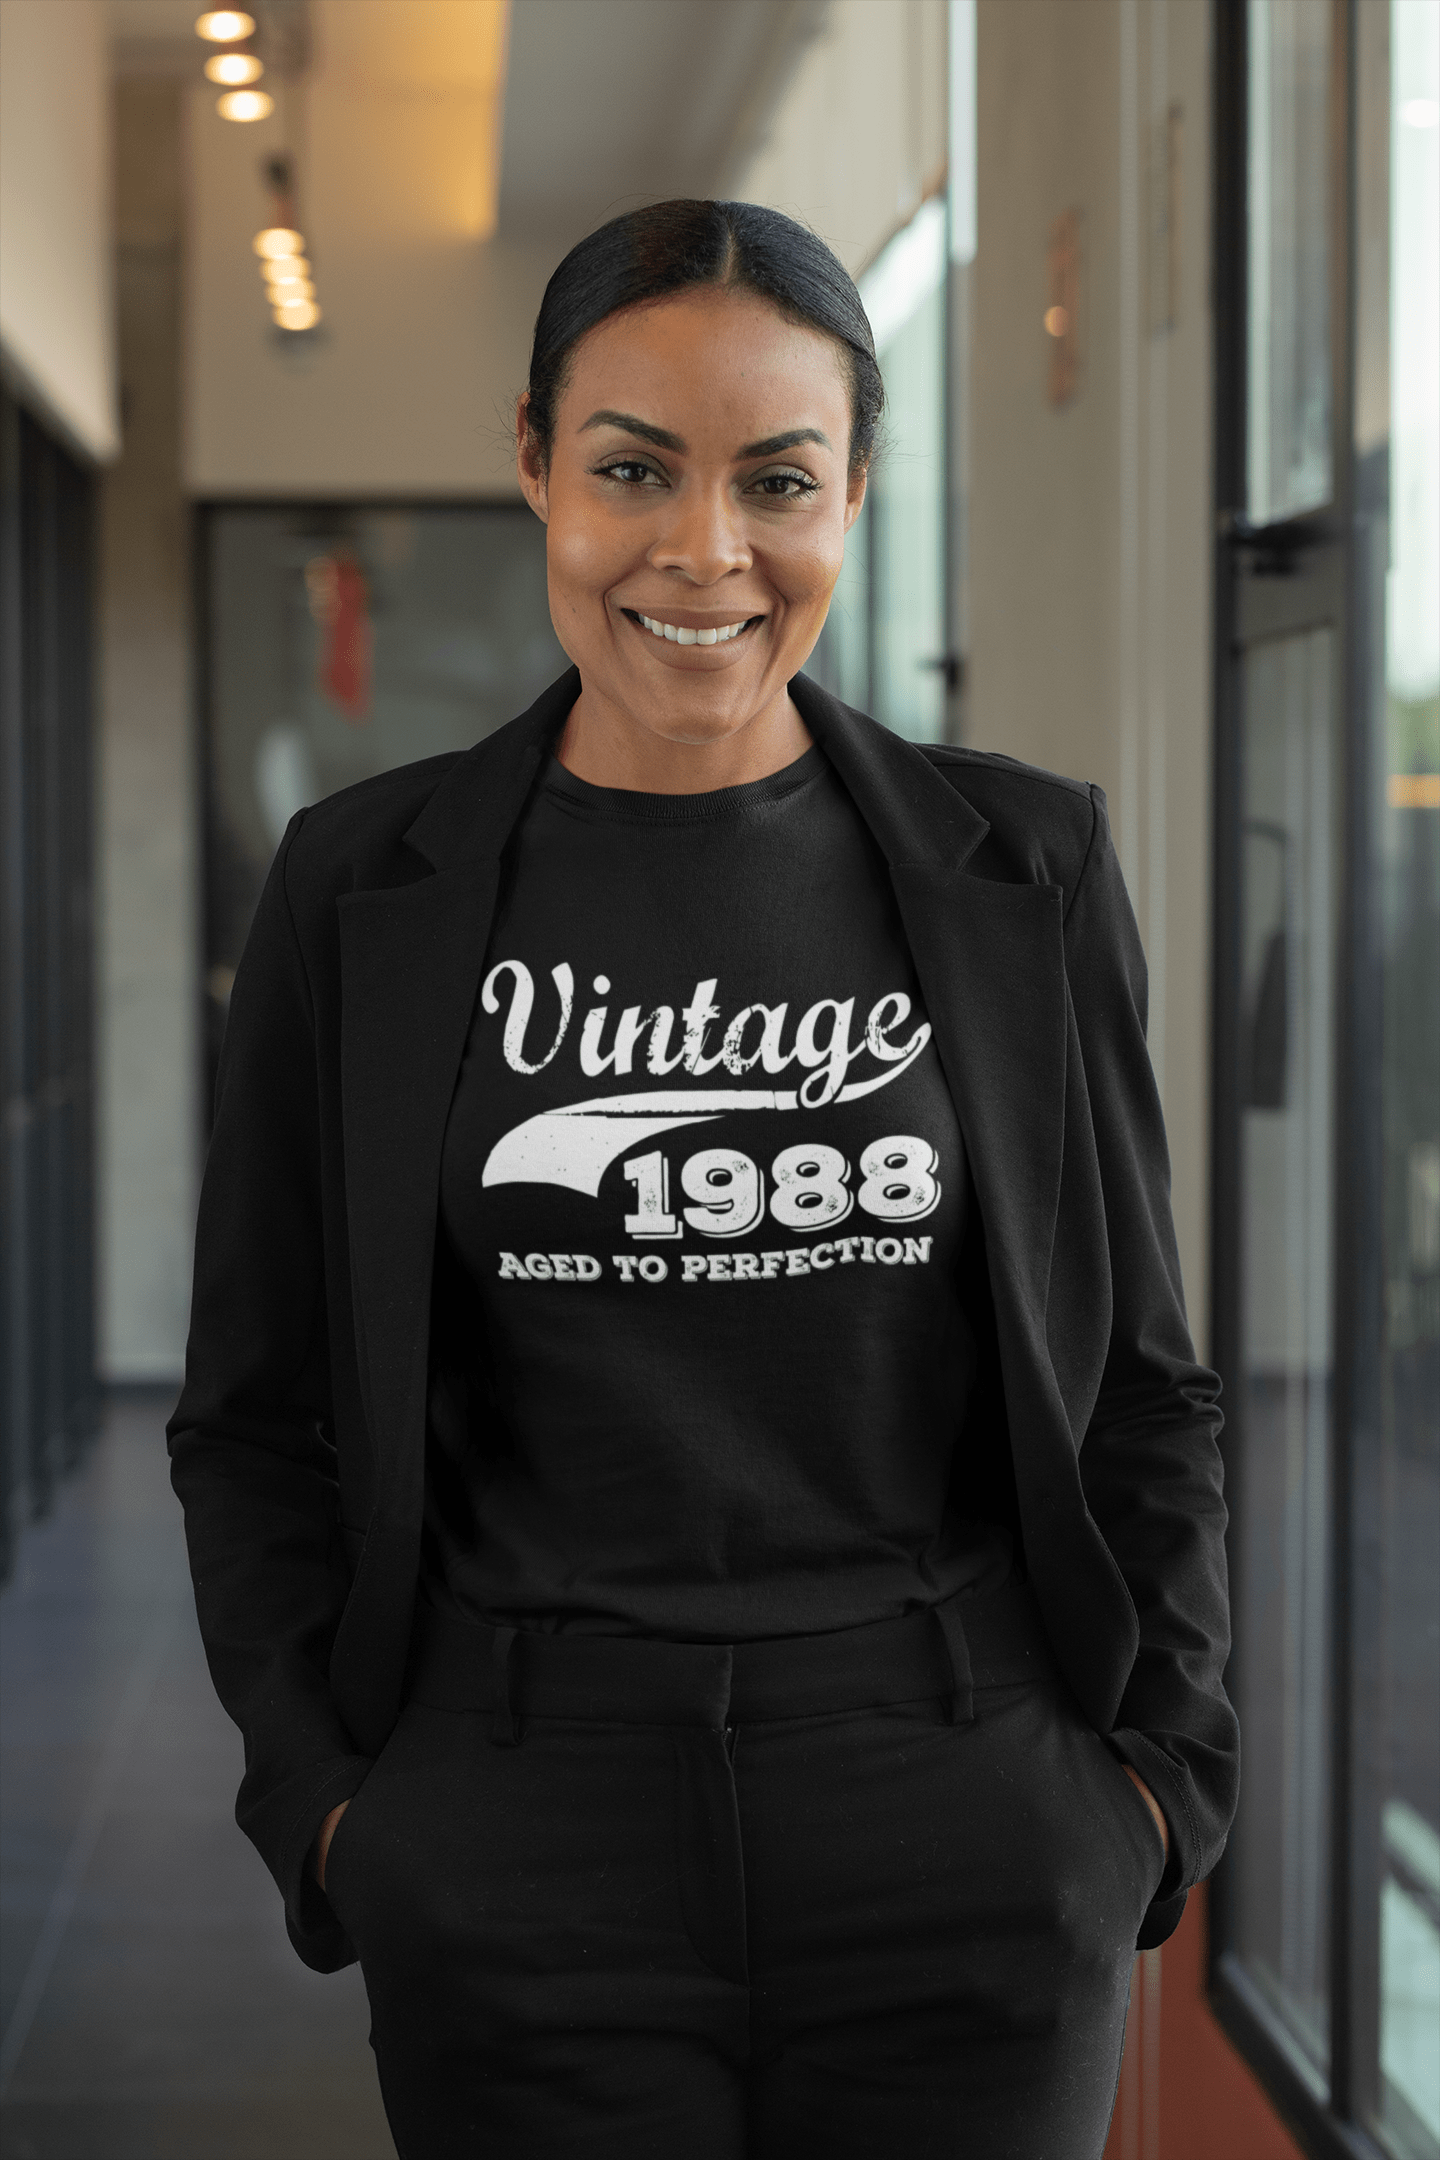 Vintage Aged to Perfection 1988, Schwarz, Damen Kurzarm-Rundhals-T-Shirt, Geschenk-T-Shirt 00345